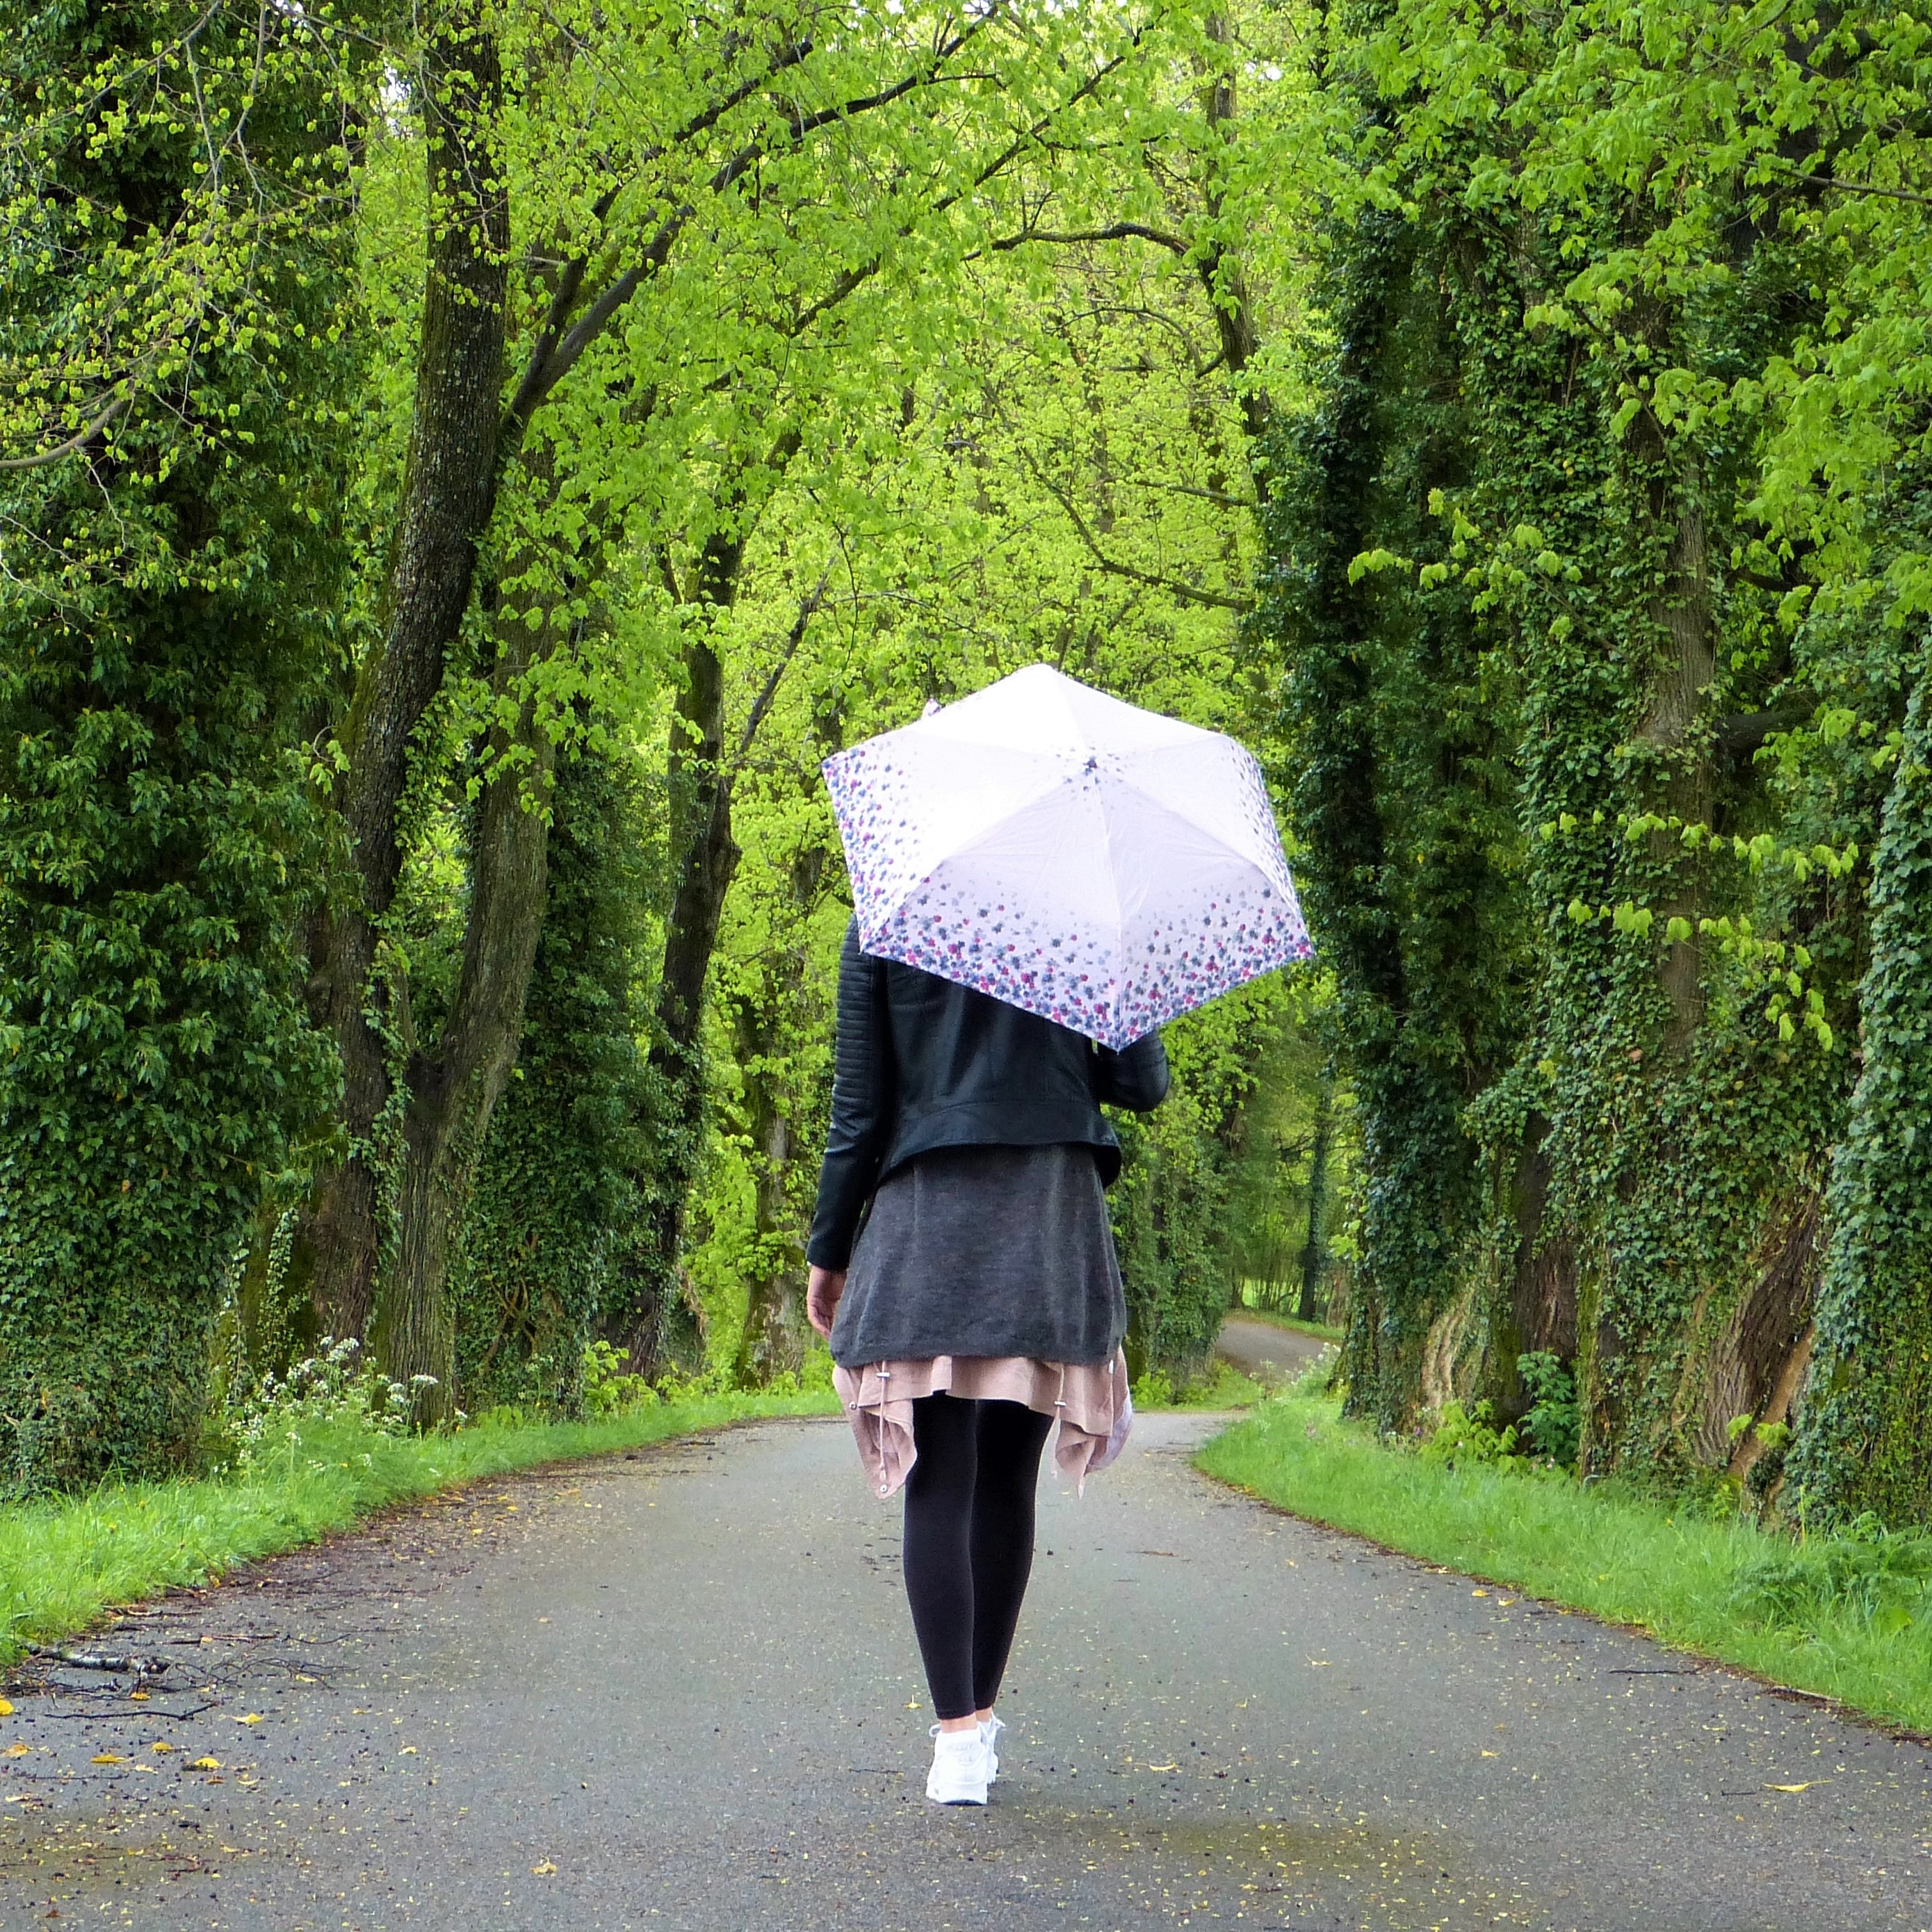 Девушка с зонтиком со спины